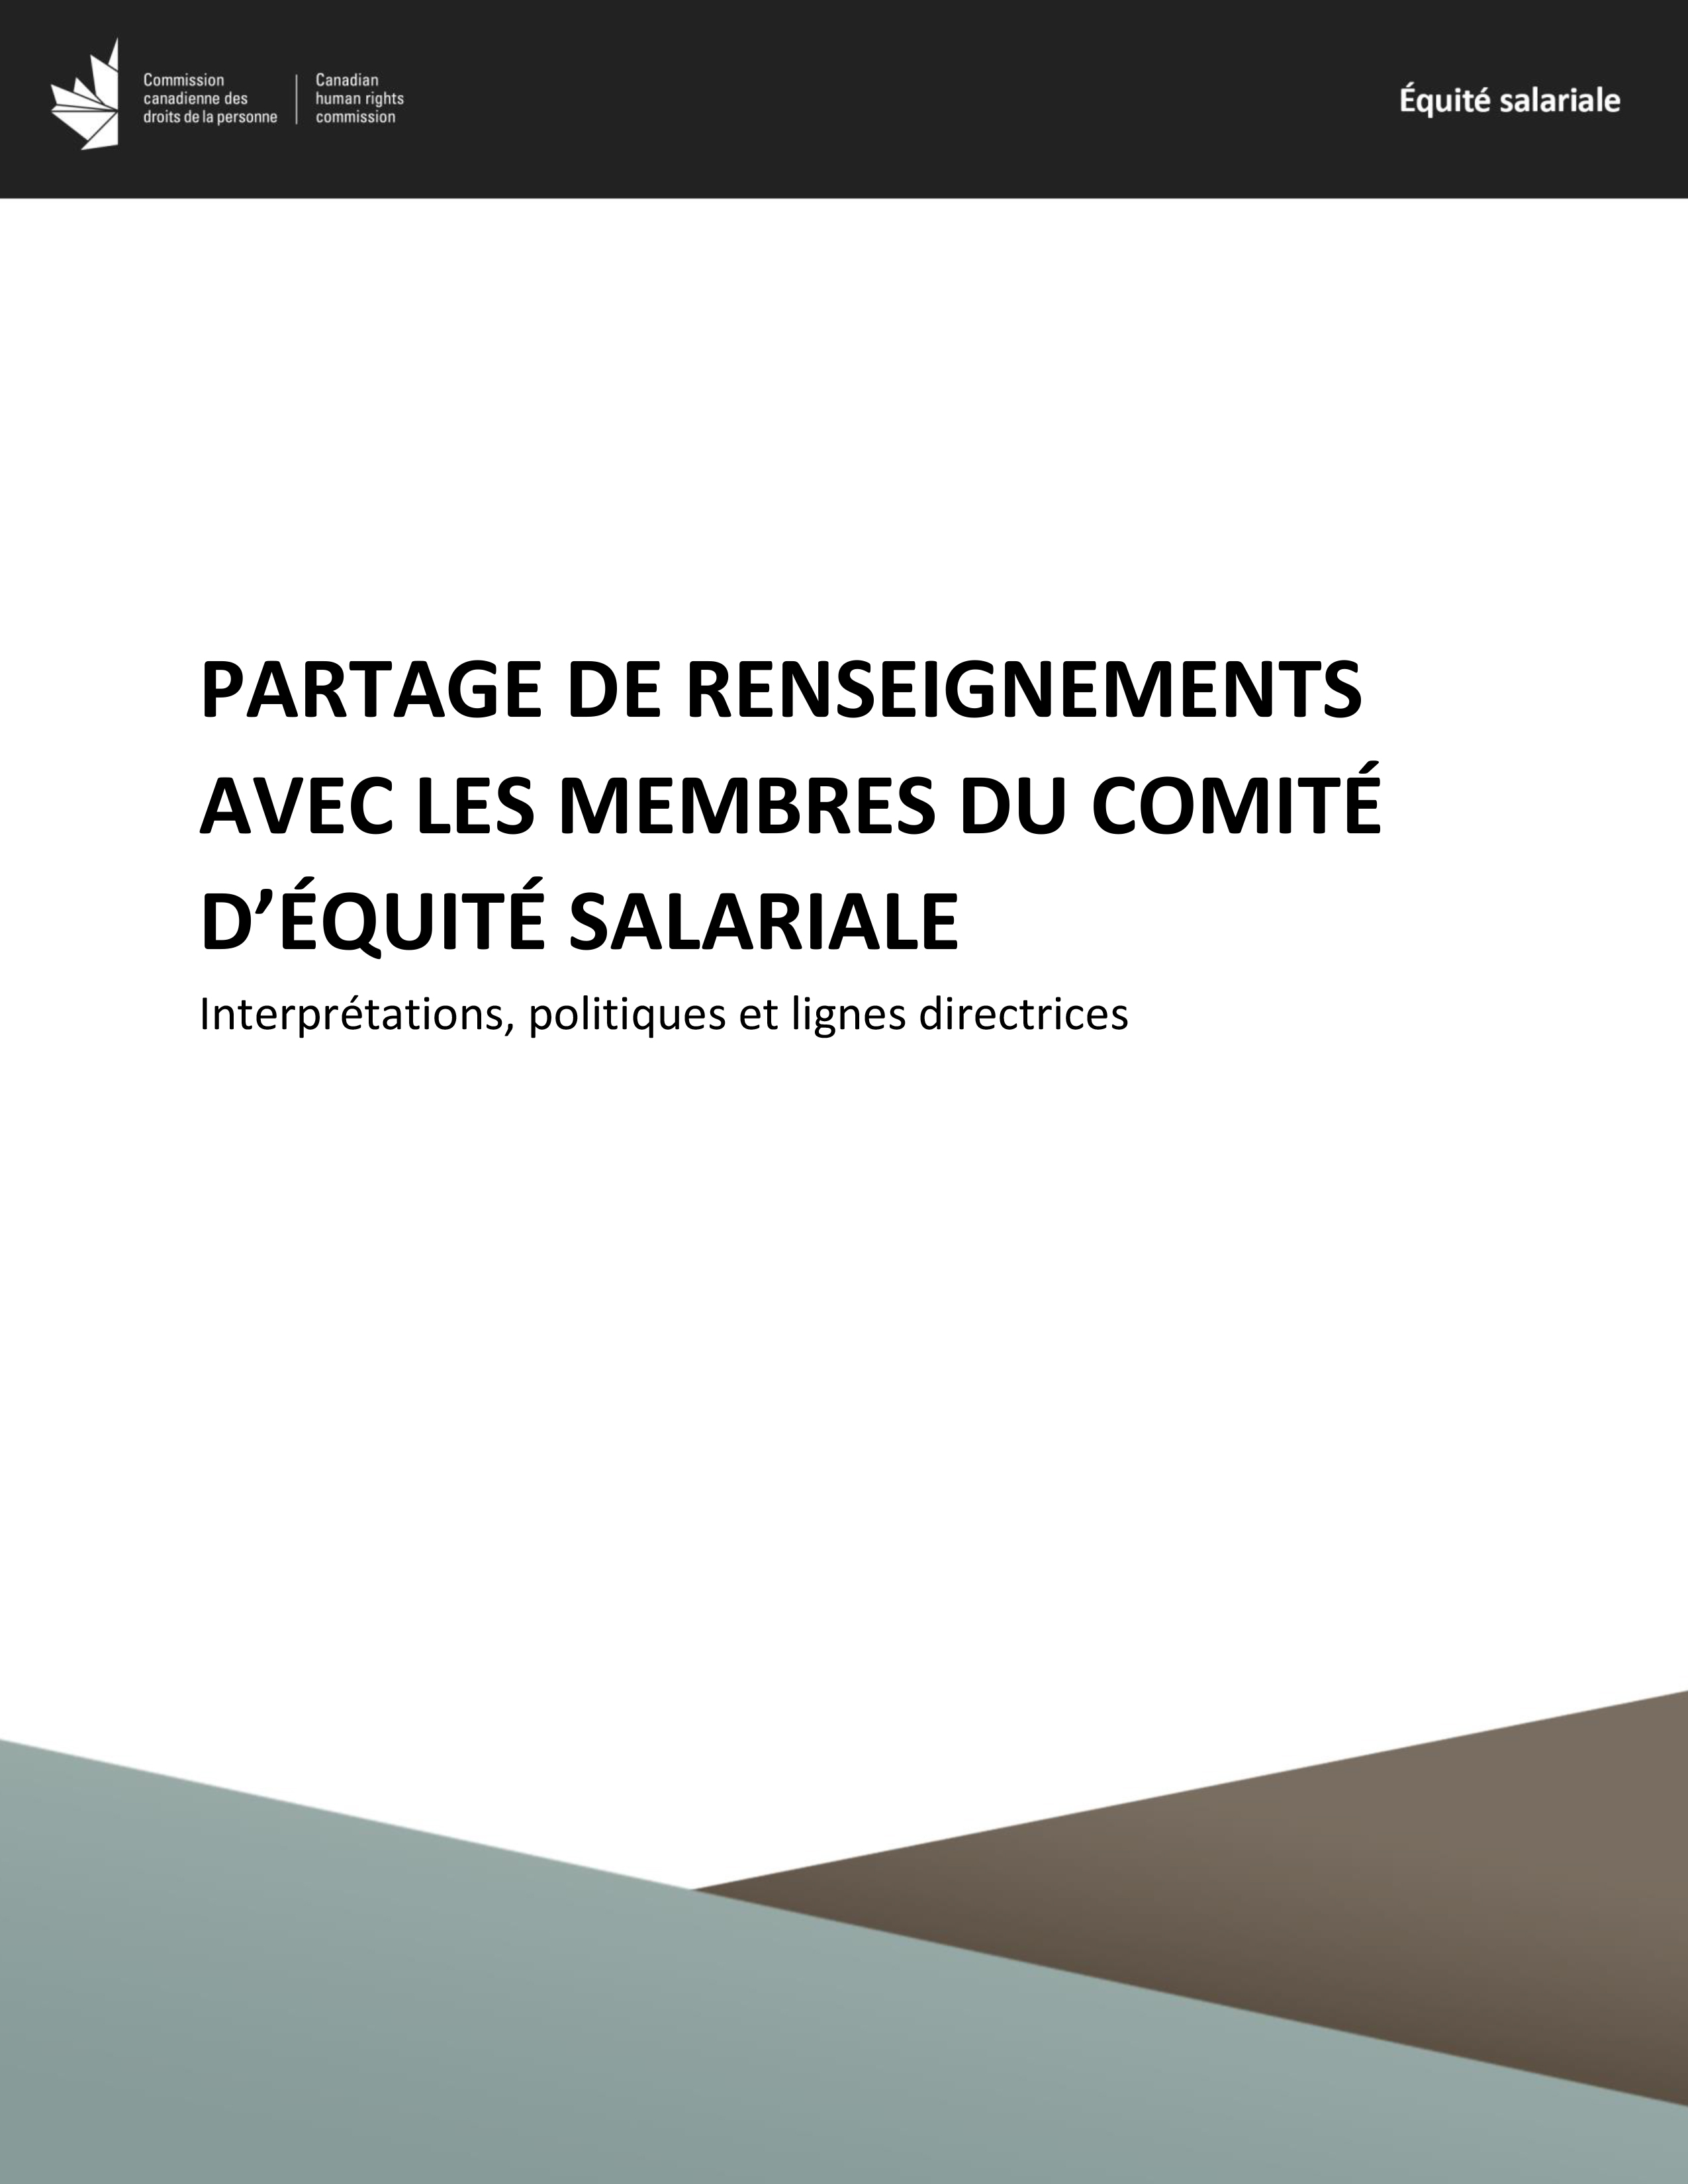 Interprétations, Politiques et Lignes directrices - Partage de renseignements avec les membres du comité d’équité salariale